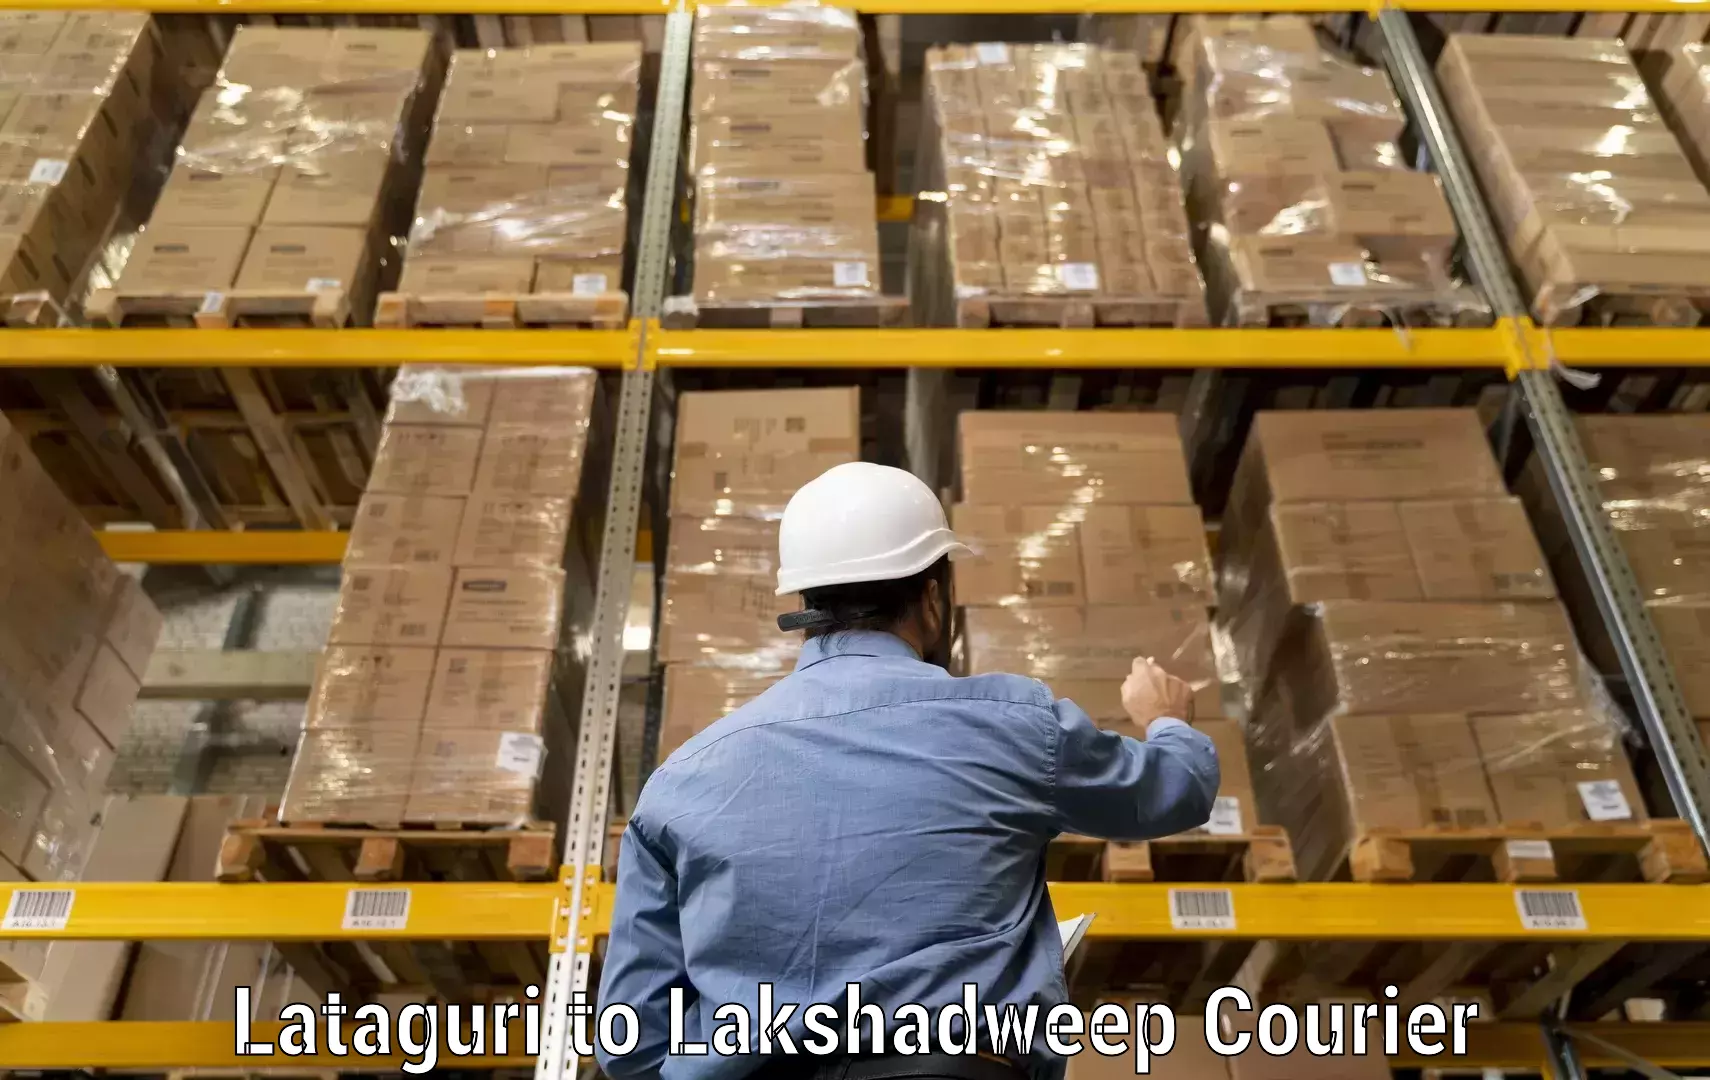 Same day shipping in Lataguri to Lakshadweep